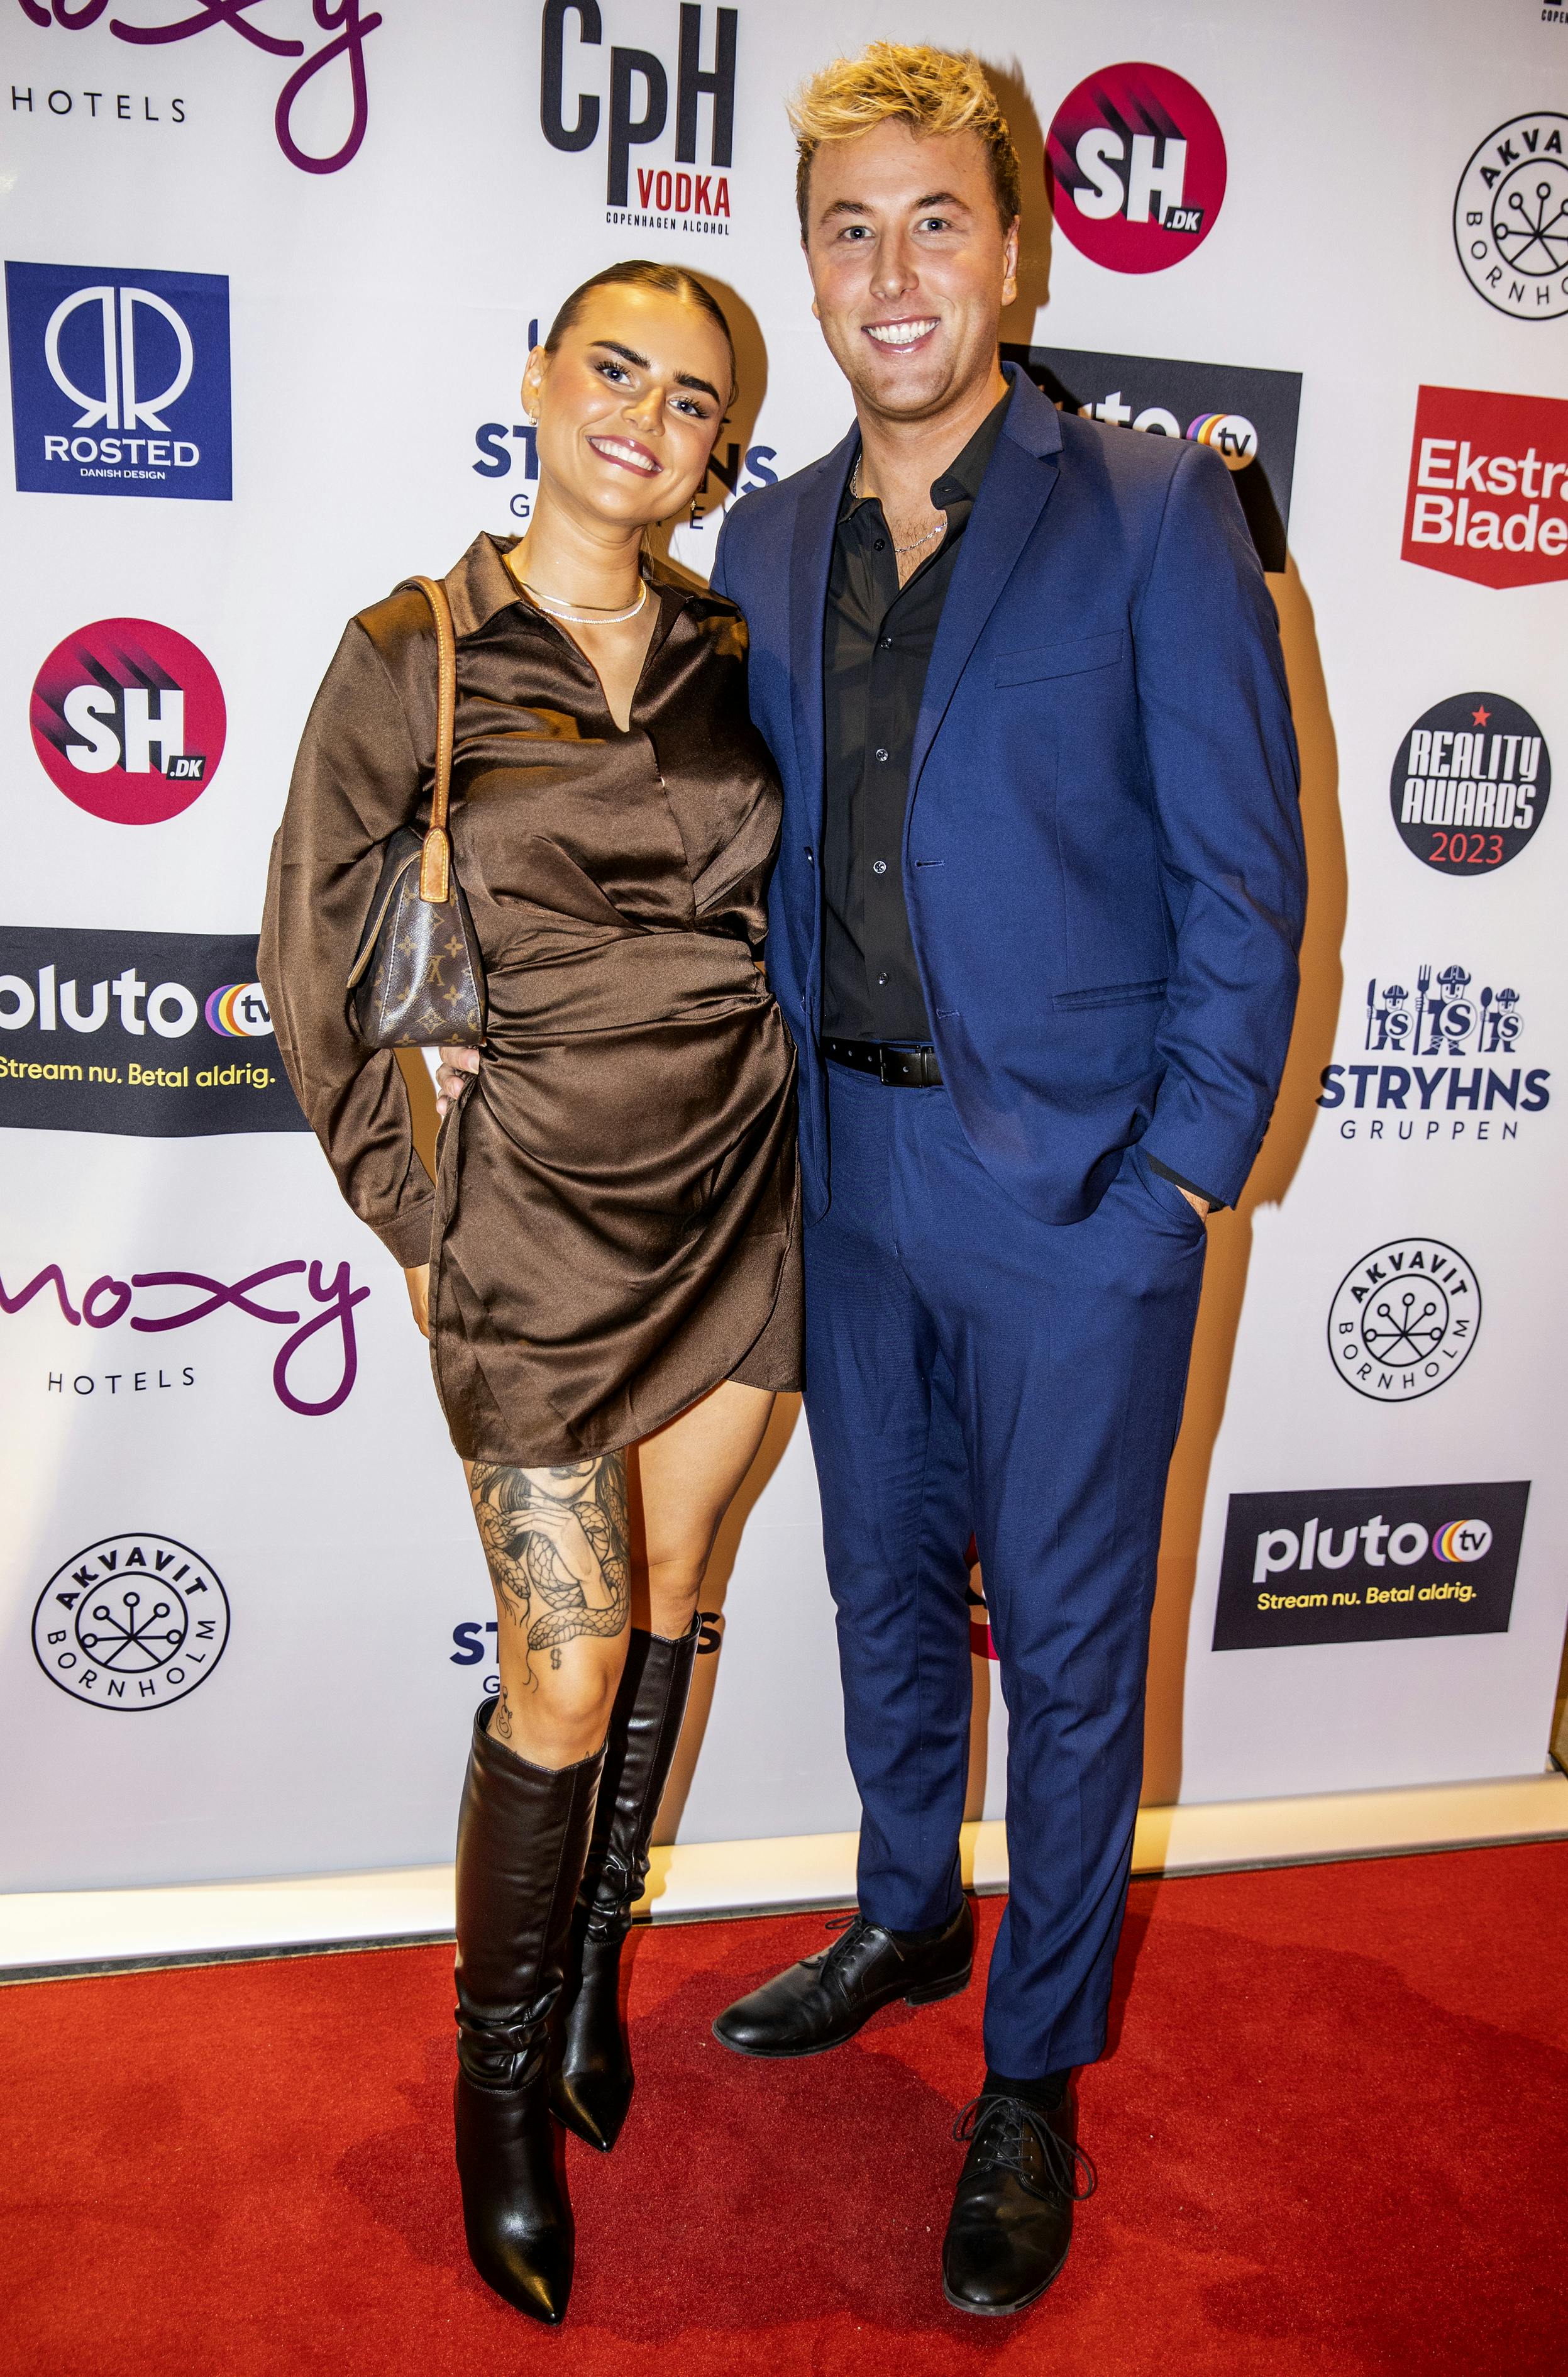 Anne Plejdrup og Nikolaj Hvidman til Reality Awards julefrokost, hvor Nikolaj dog havde tænkt sig at få lidt snaps indenbords.